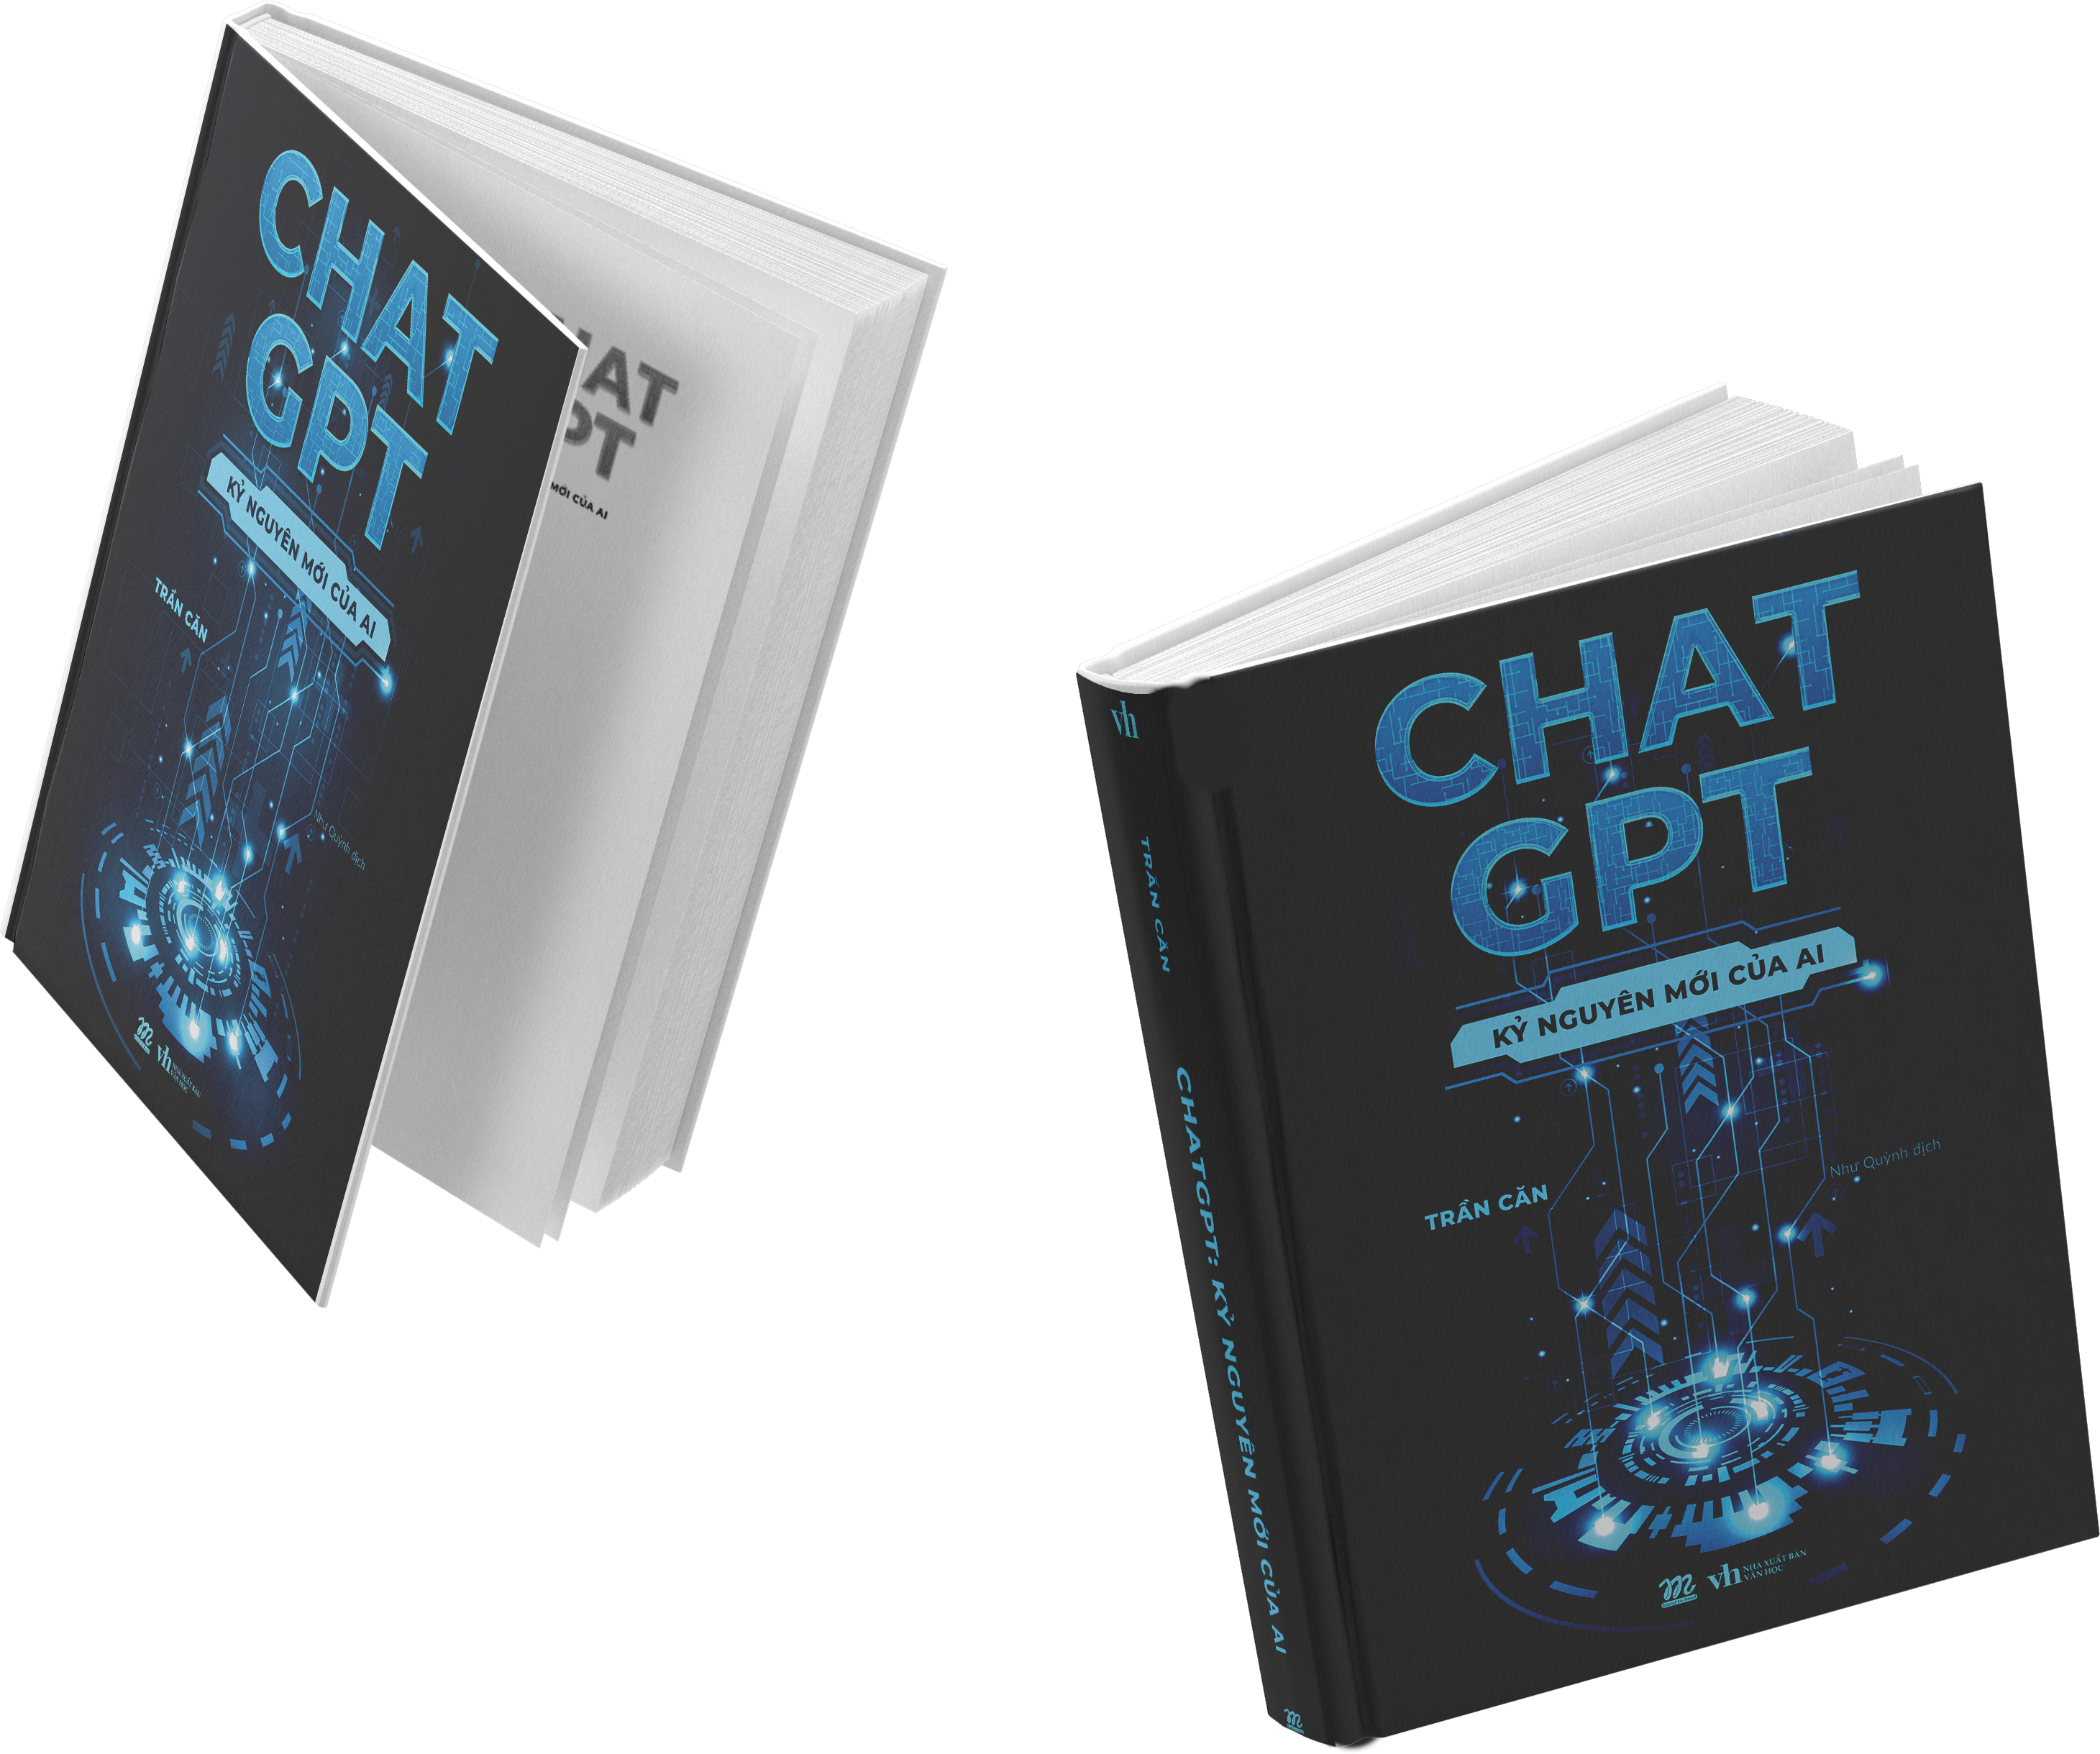 Chat GPT - Kỷ Nguyên Mới Của AI PDF